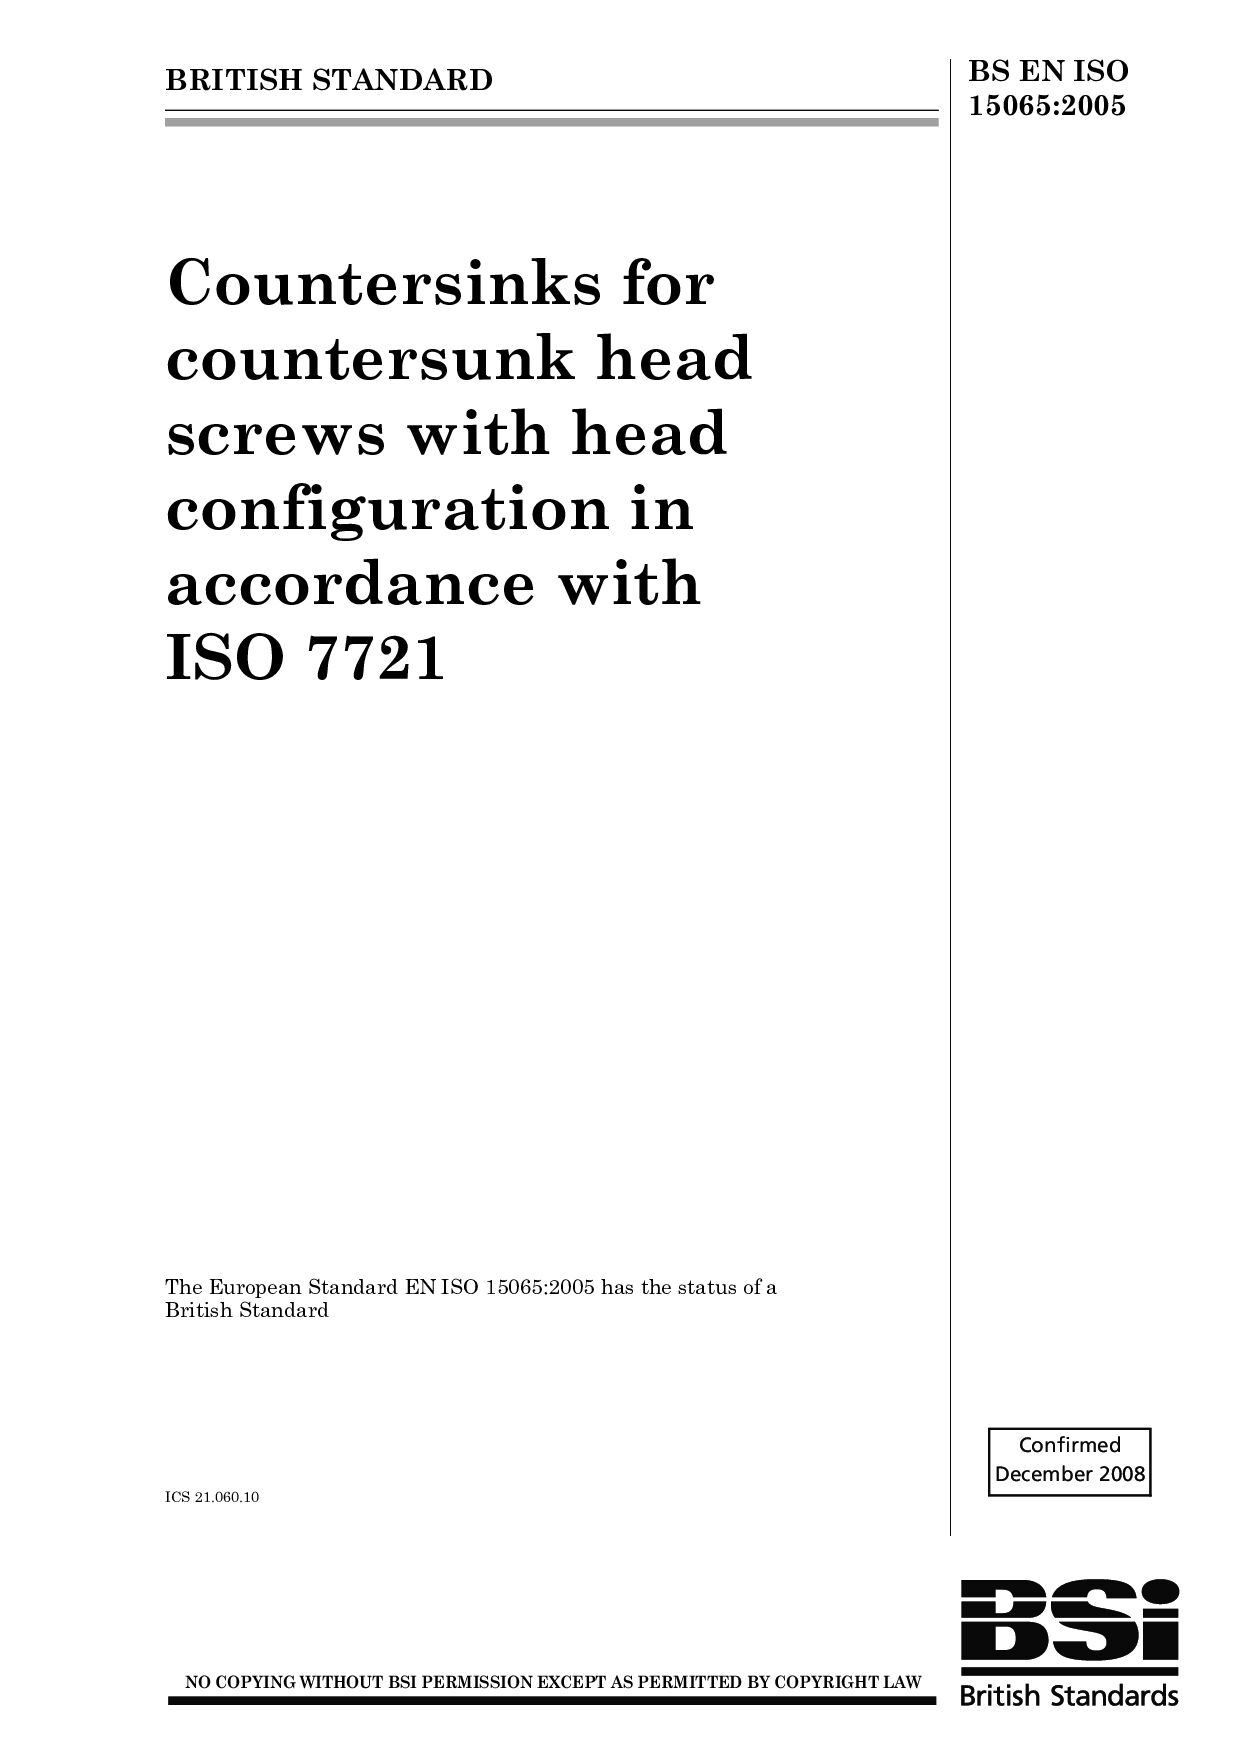 BS EN ISO 15065:2005(2008)封面图